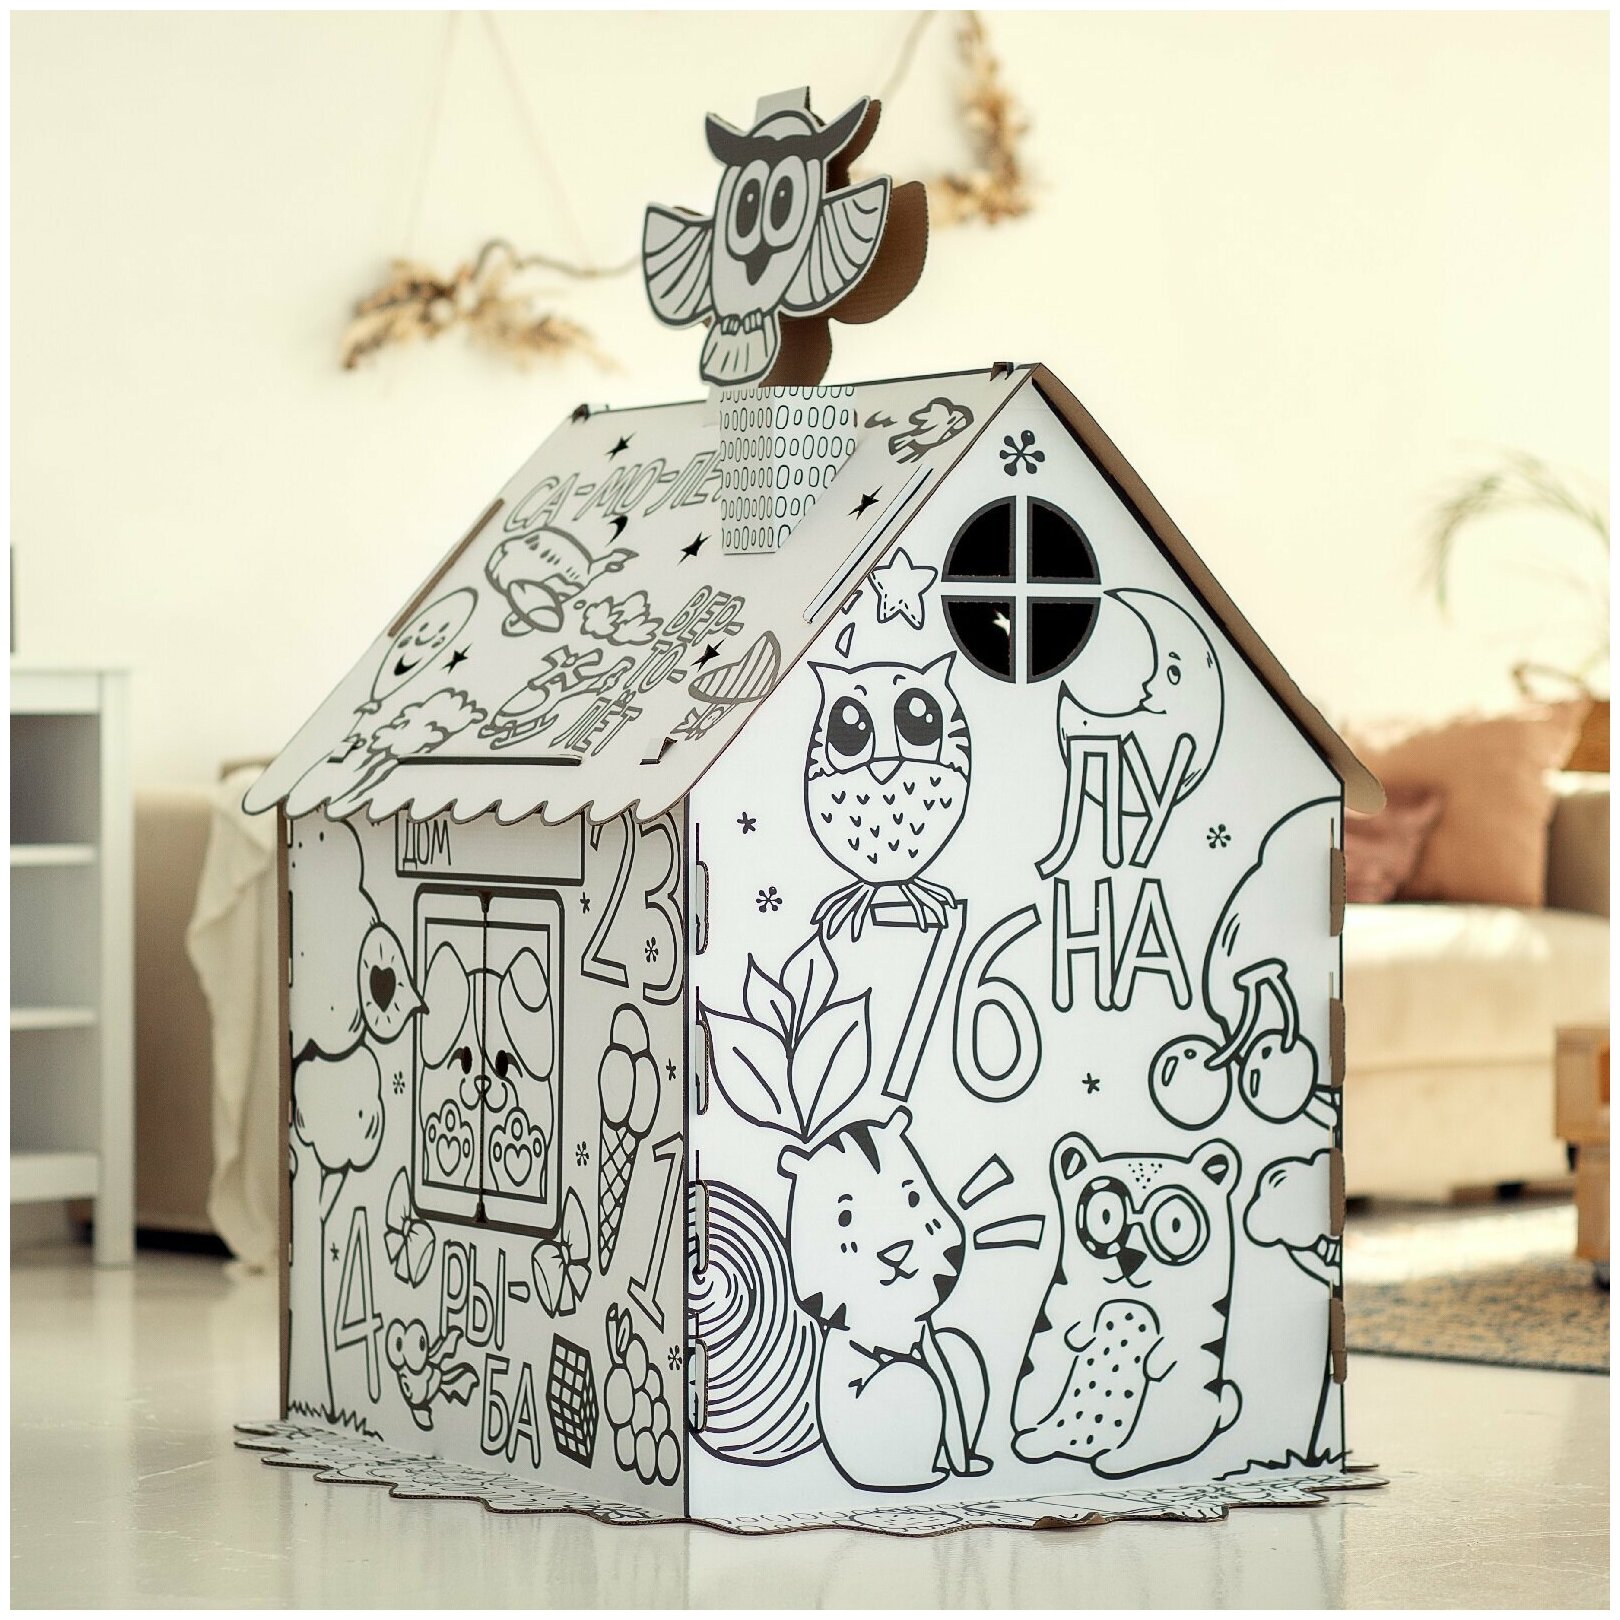 Картонный домик раскраска для детей. Развивающий дом для ребёнка. Игрушка домик из картона детский